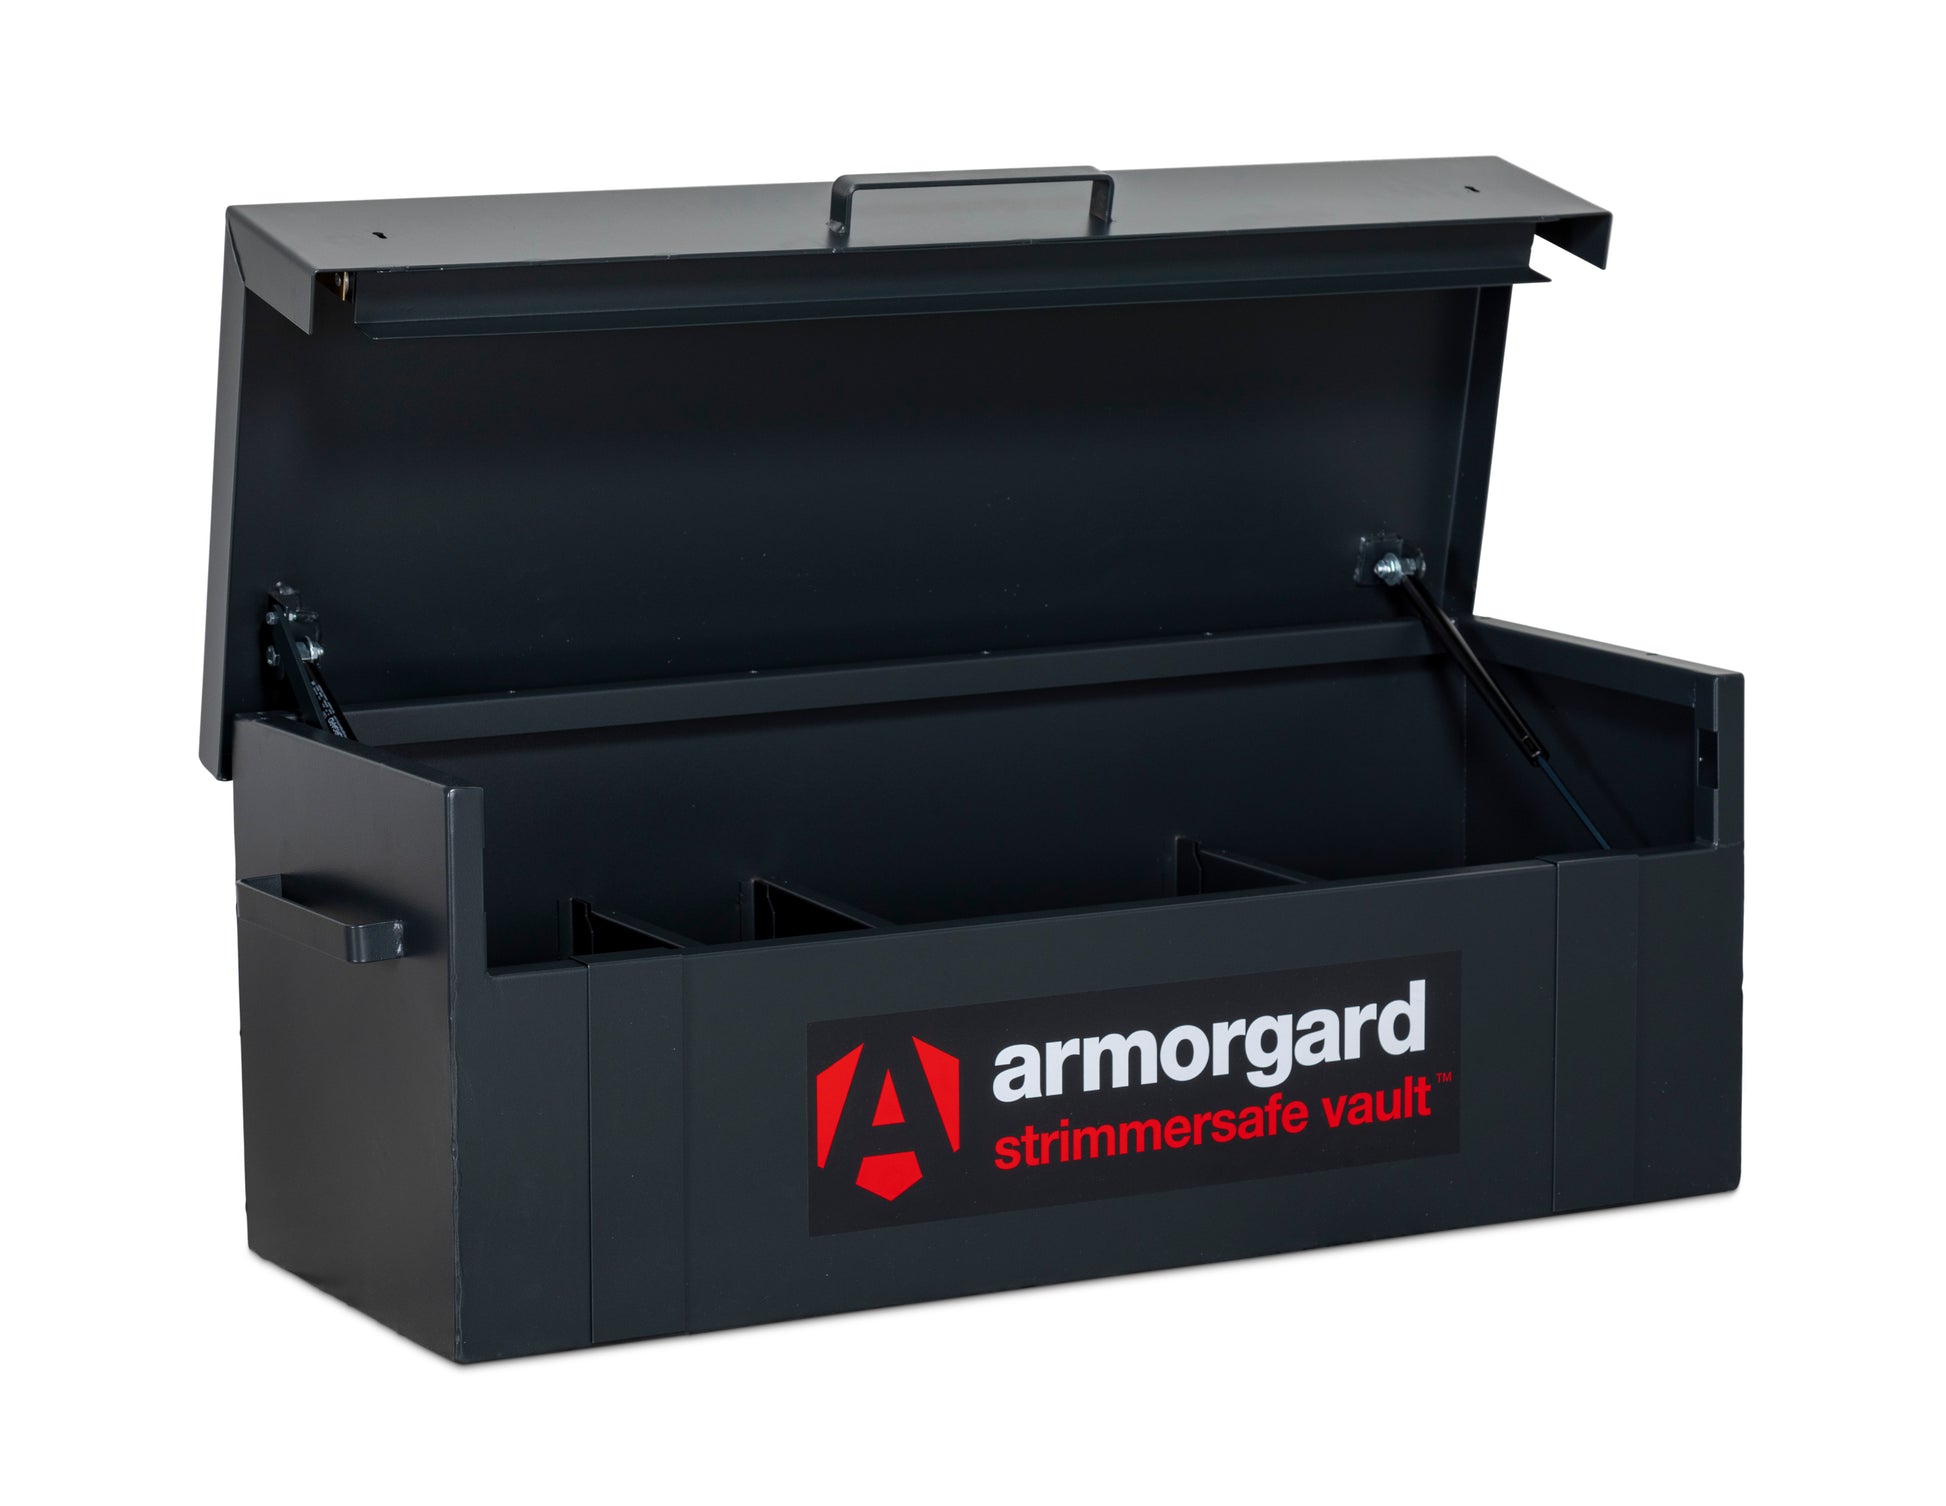 Armorgard - STRIMMERSAFE VAULT StrimmerSafe Vault 1970x675x665